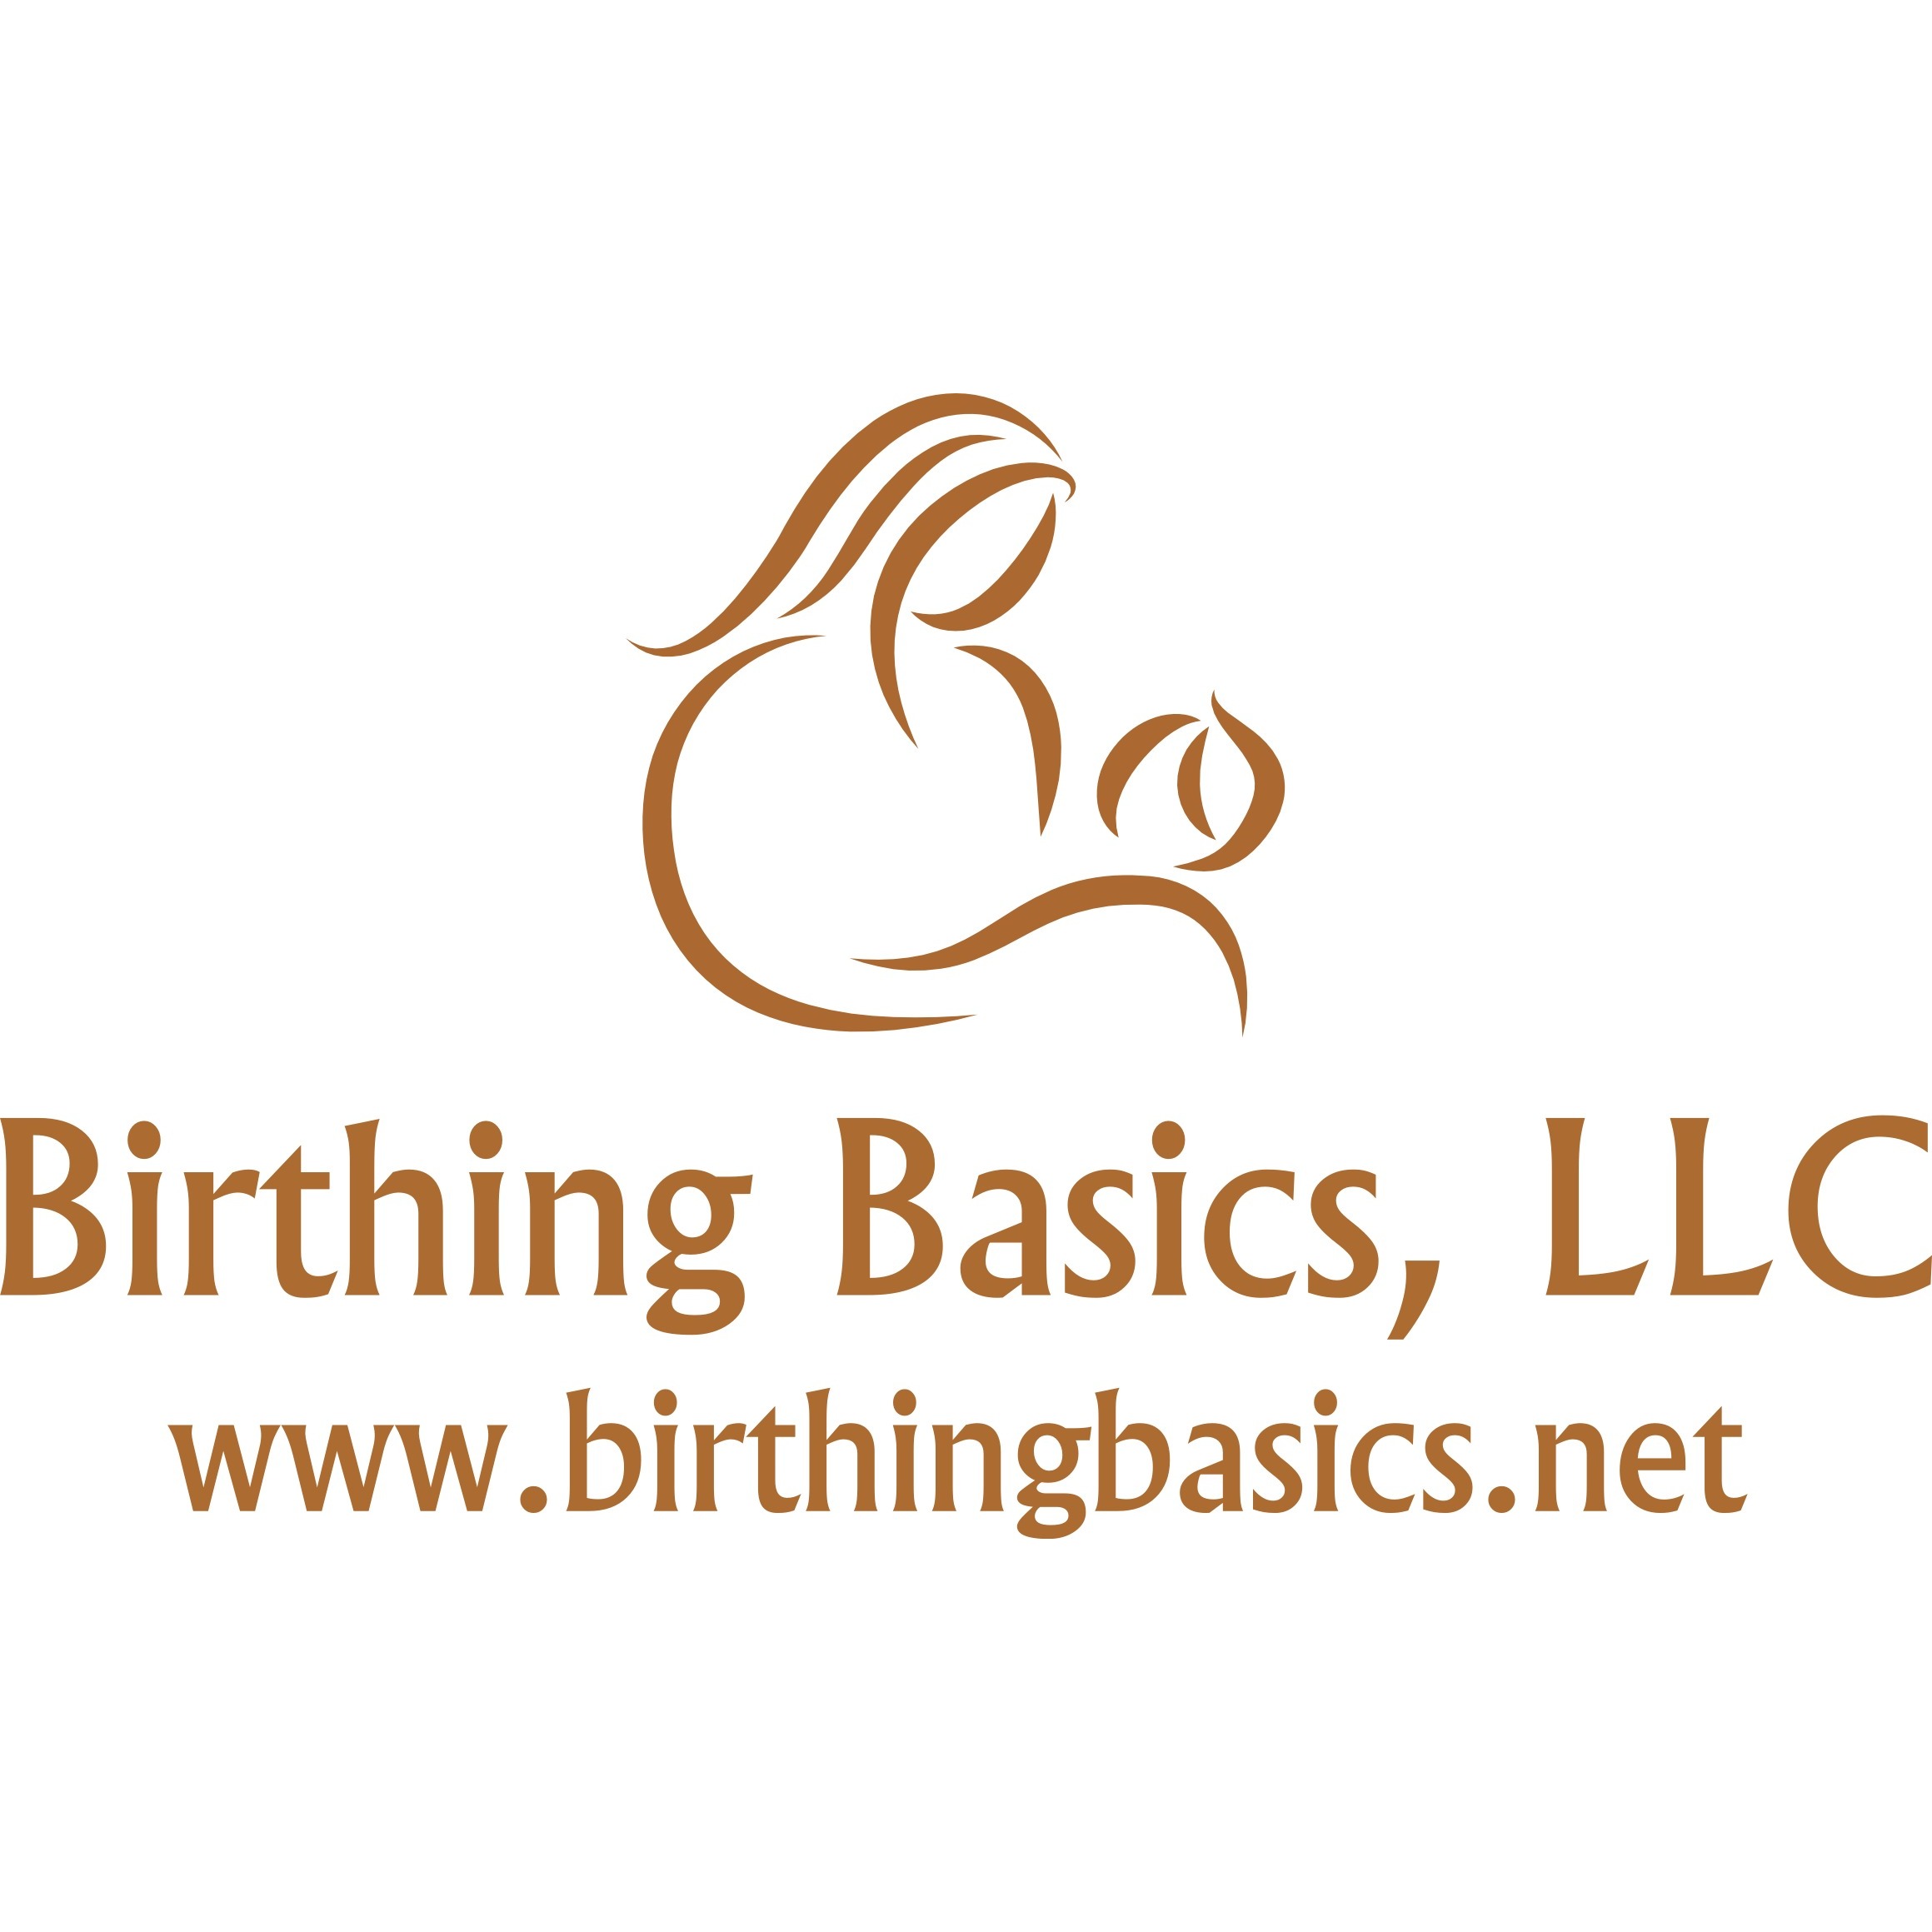 Birthing Basics, LLC